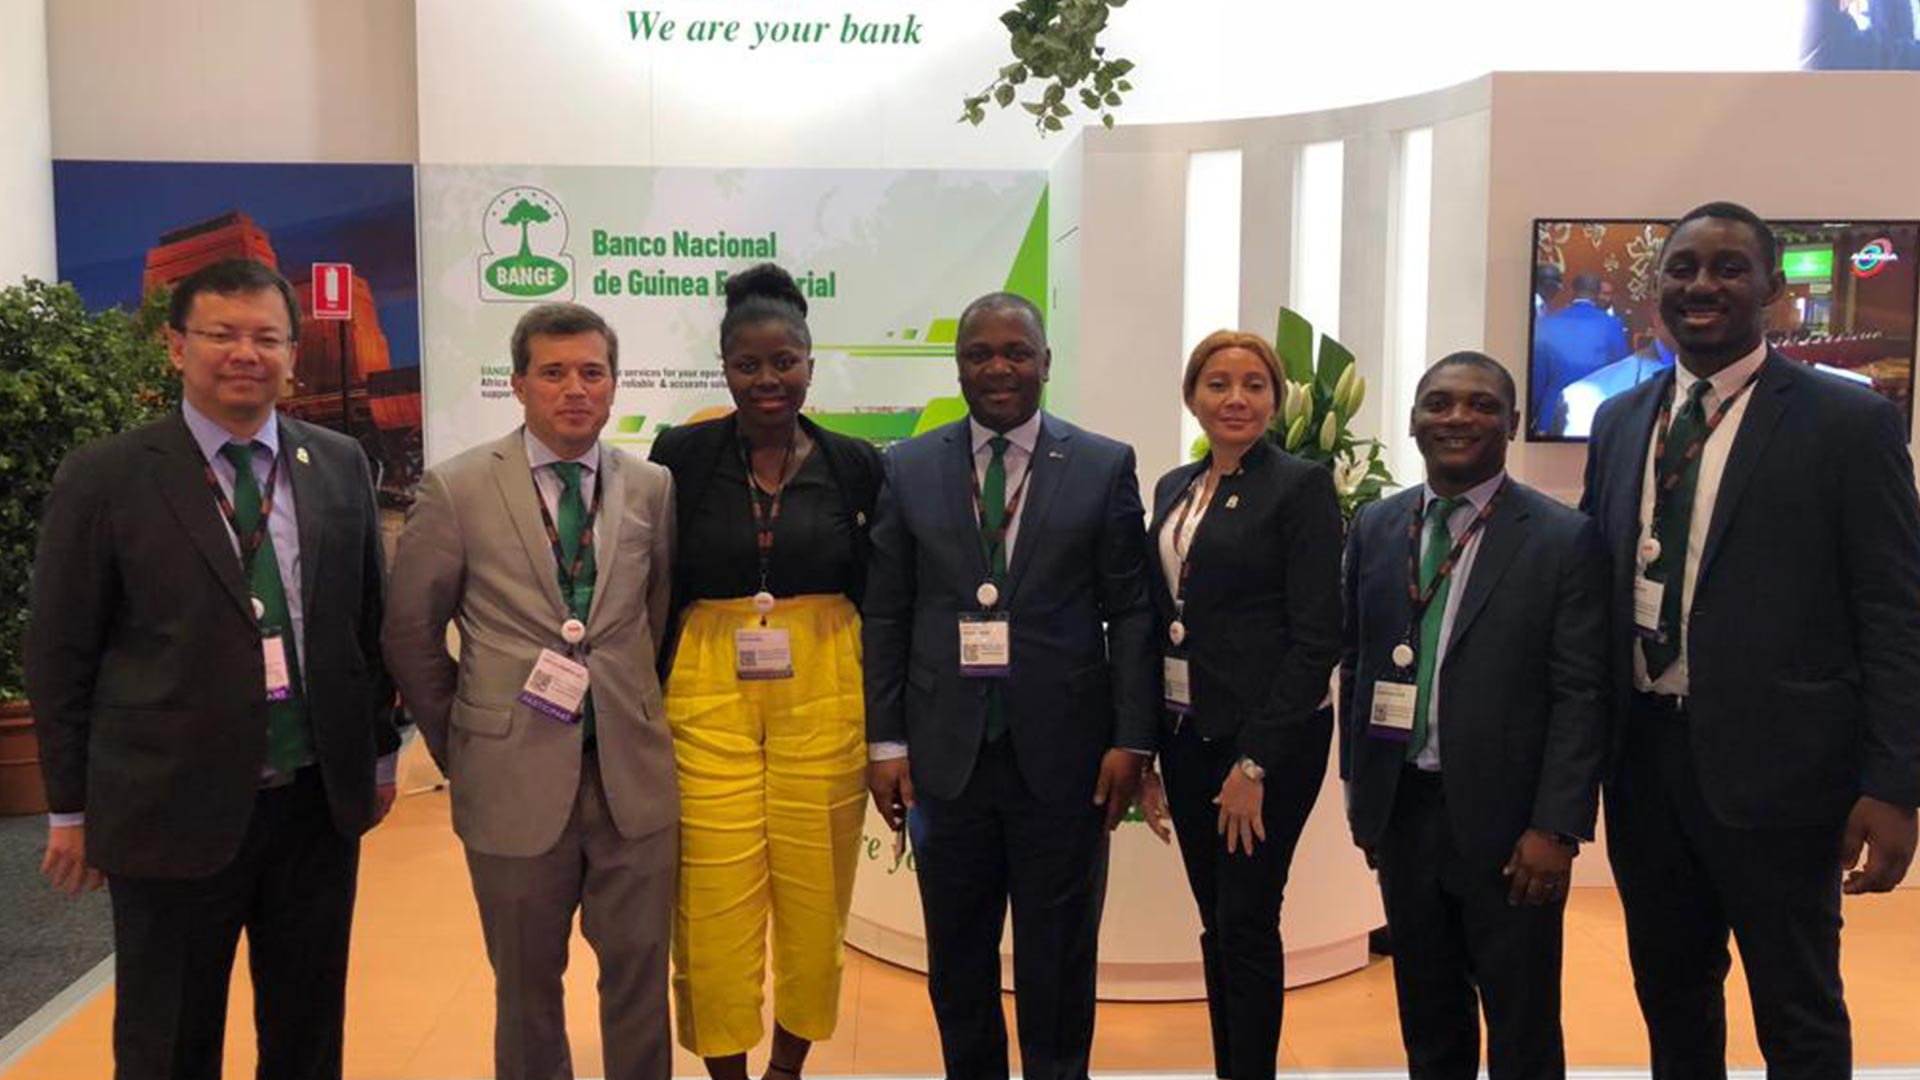 El Banco Nacional de Guinea Ecuatorial participa en la Conferencia SIBOS 2018